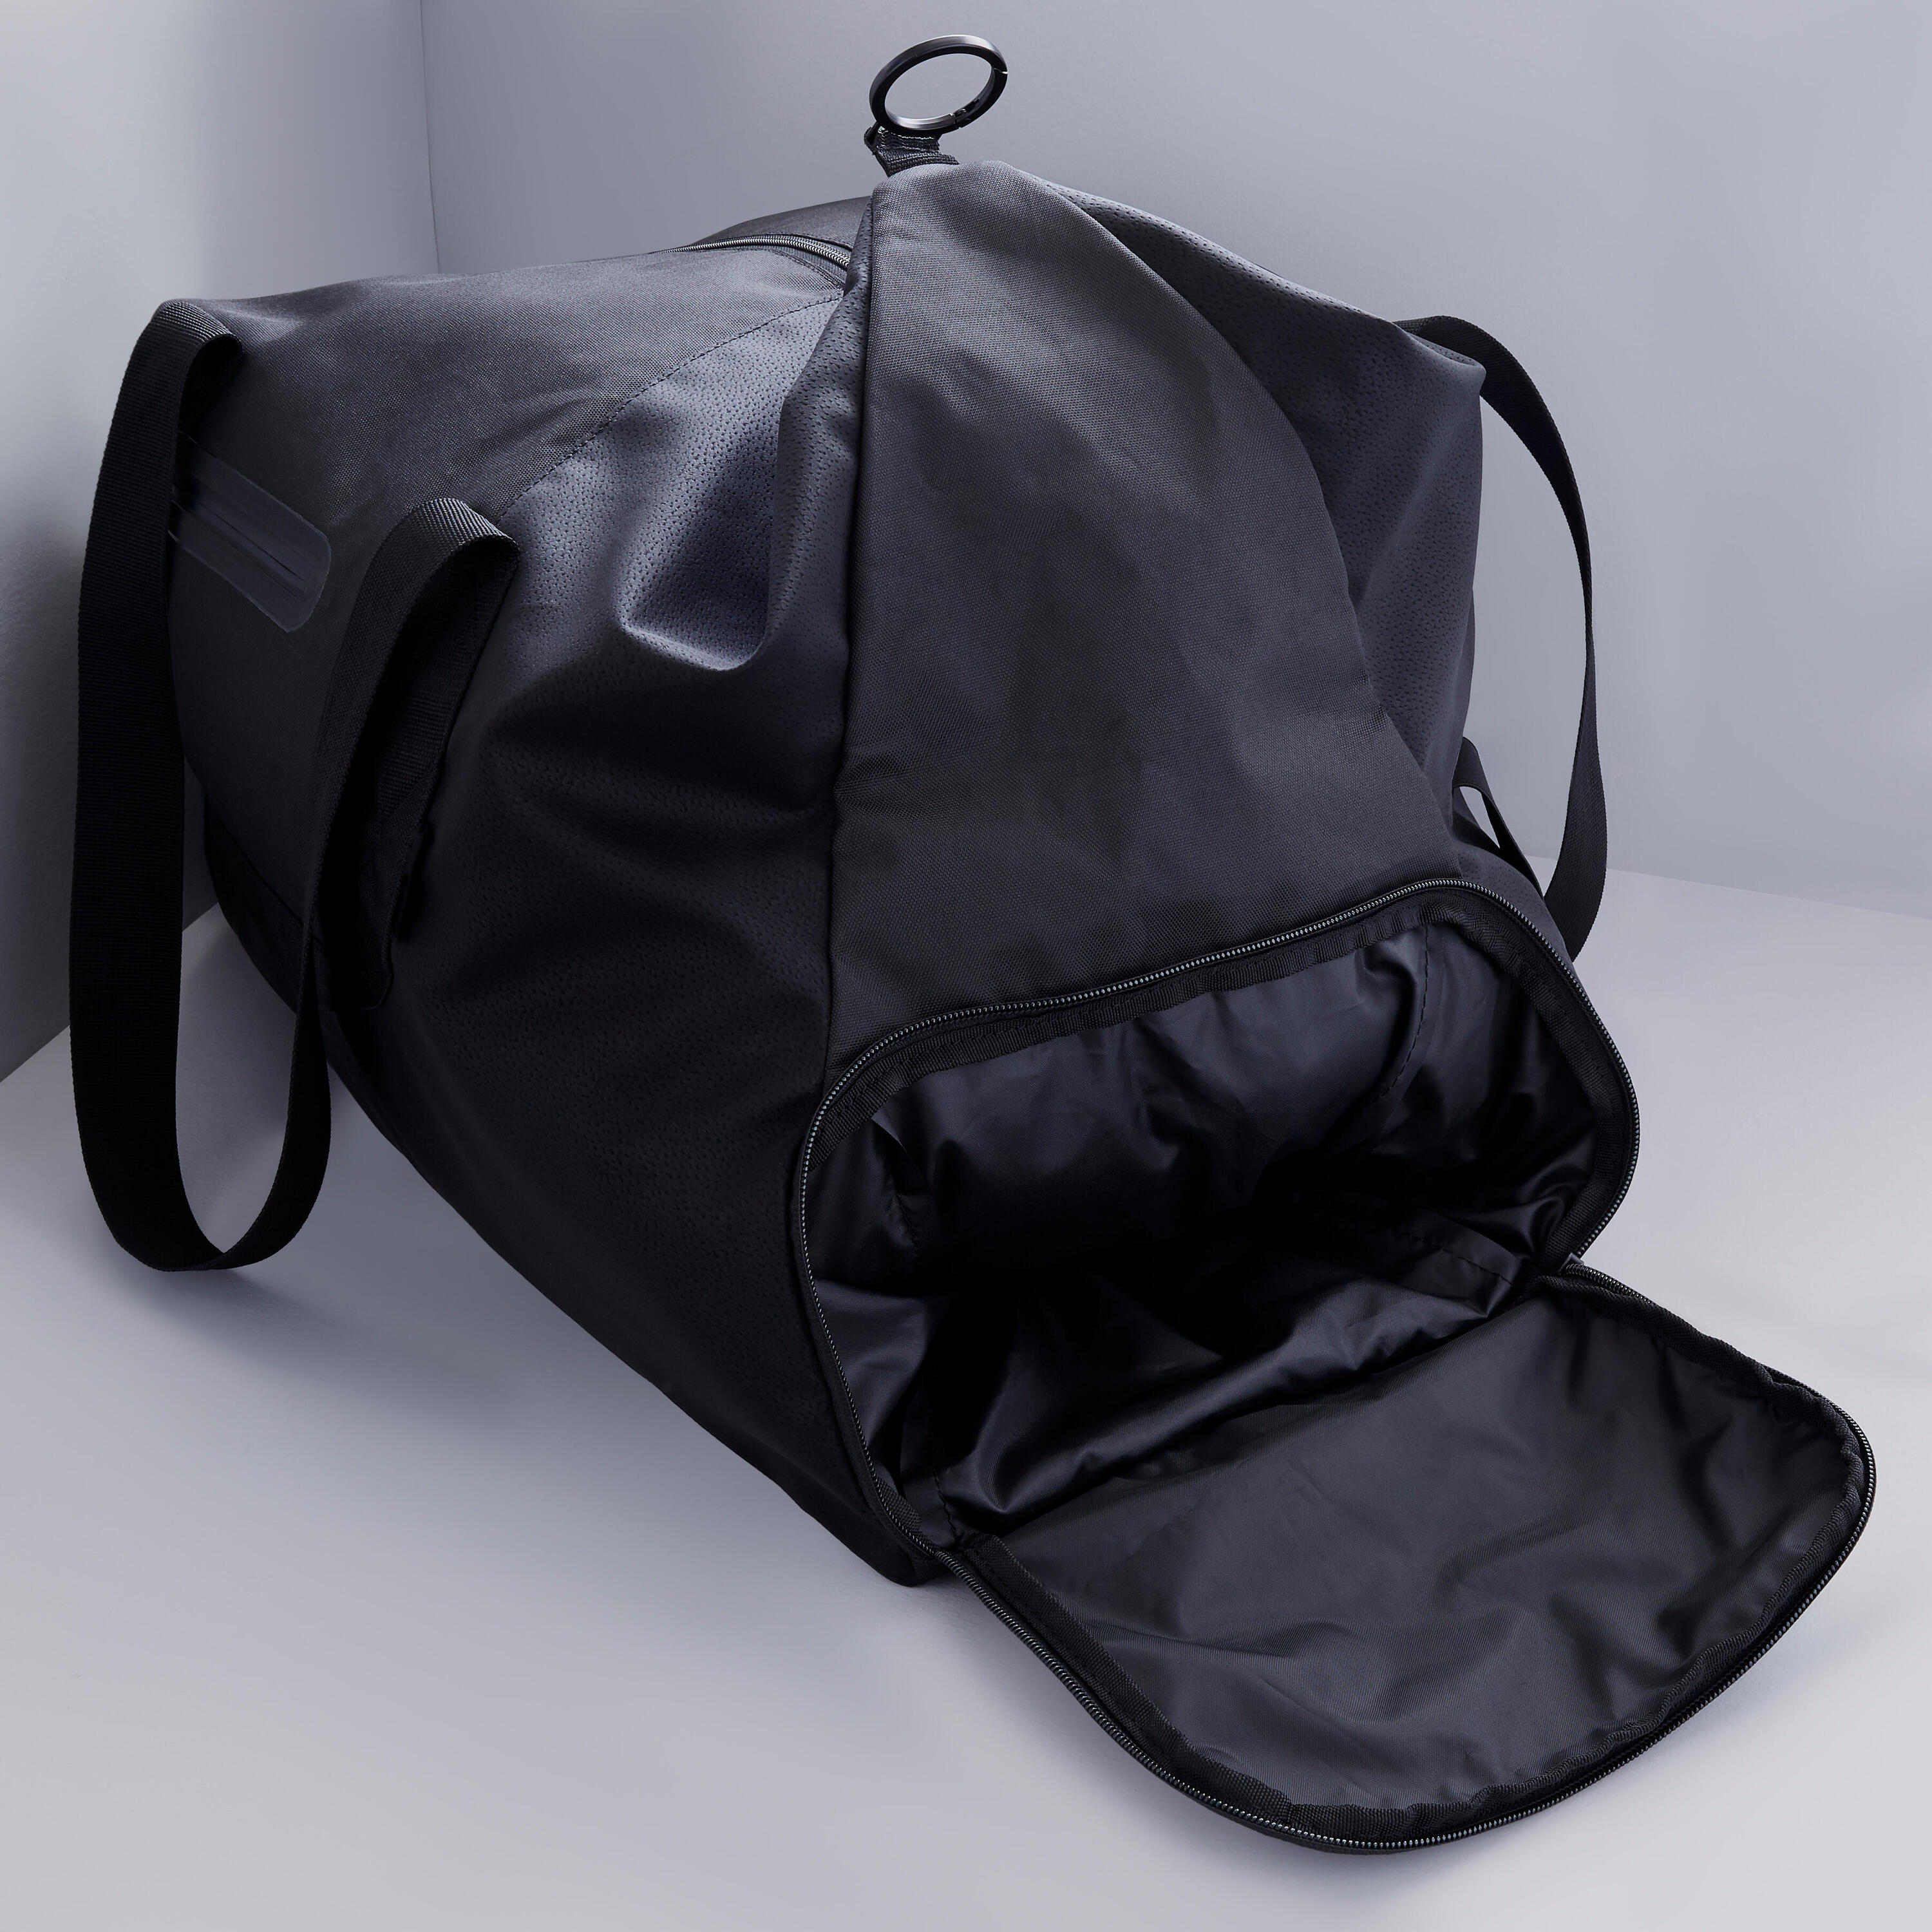 An Elegant Training Bag Designed For Both Men And Women 4/9